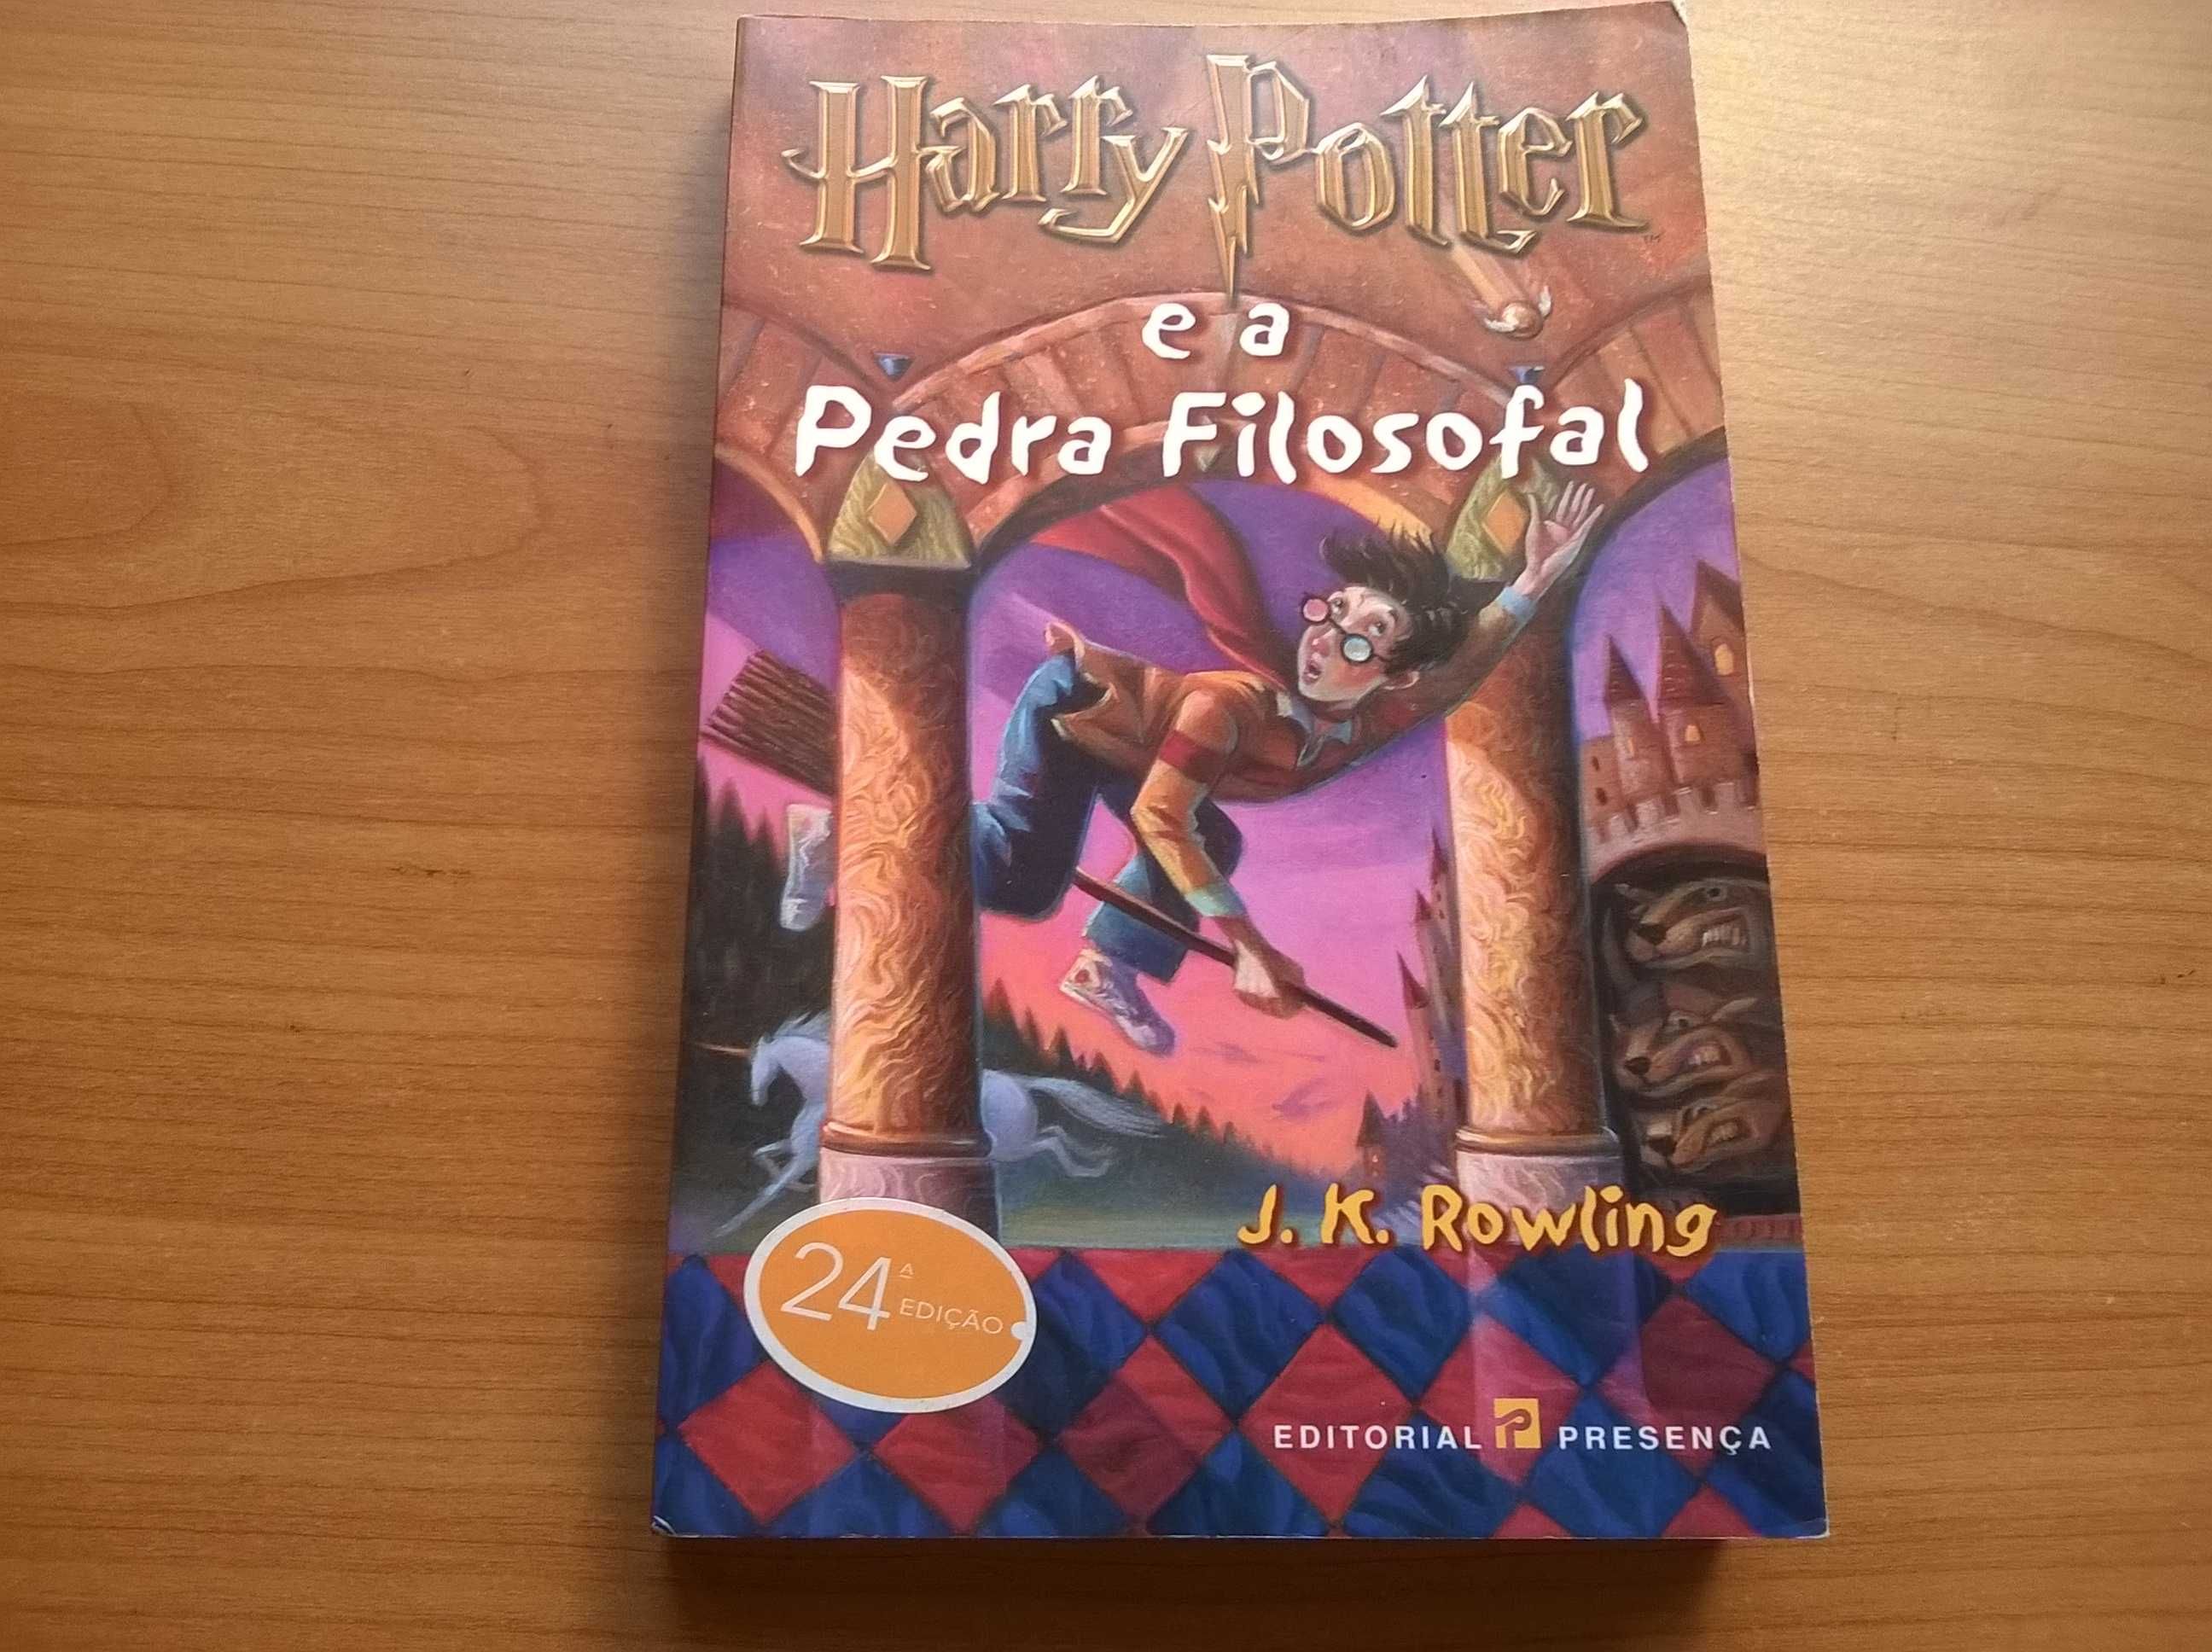 Harry Potter e a Pedra Filosofal - J. K. Rowling (portes grátis)